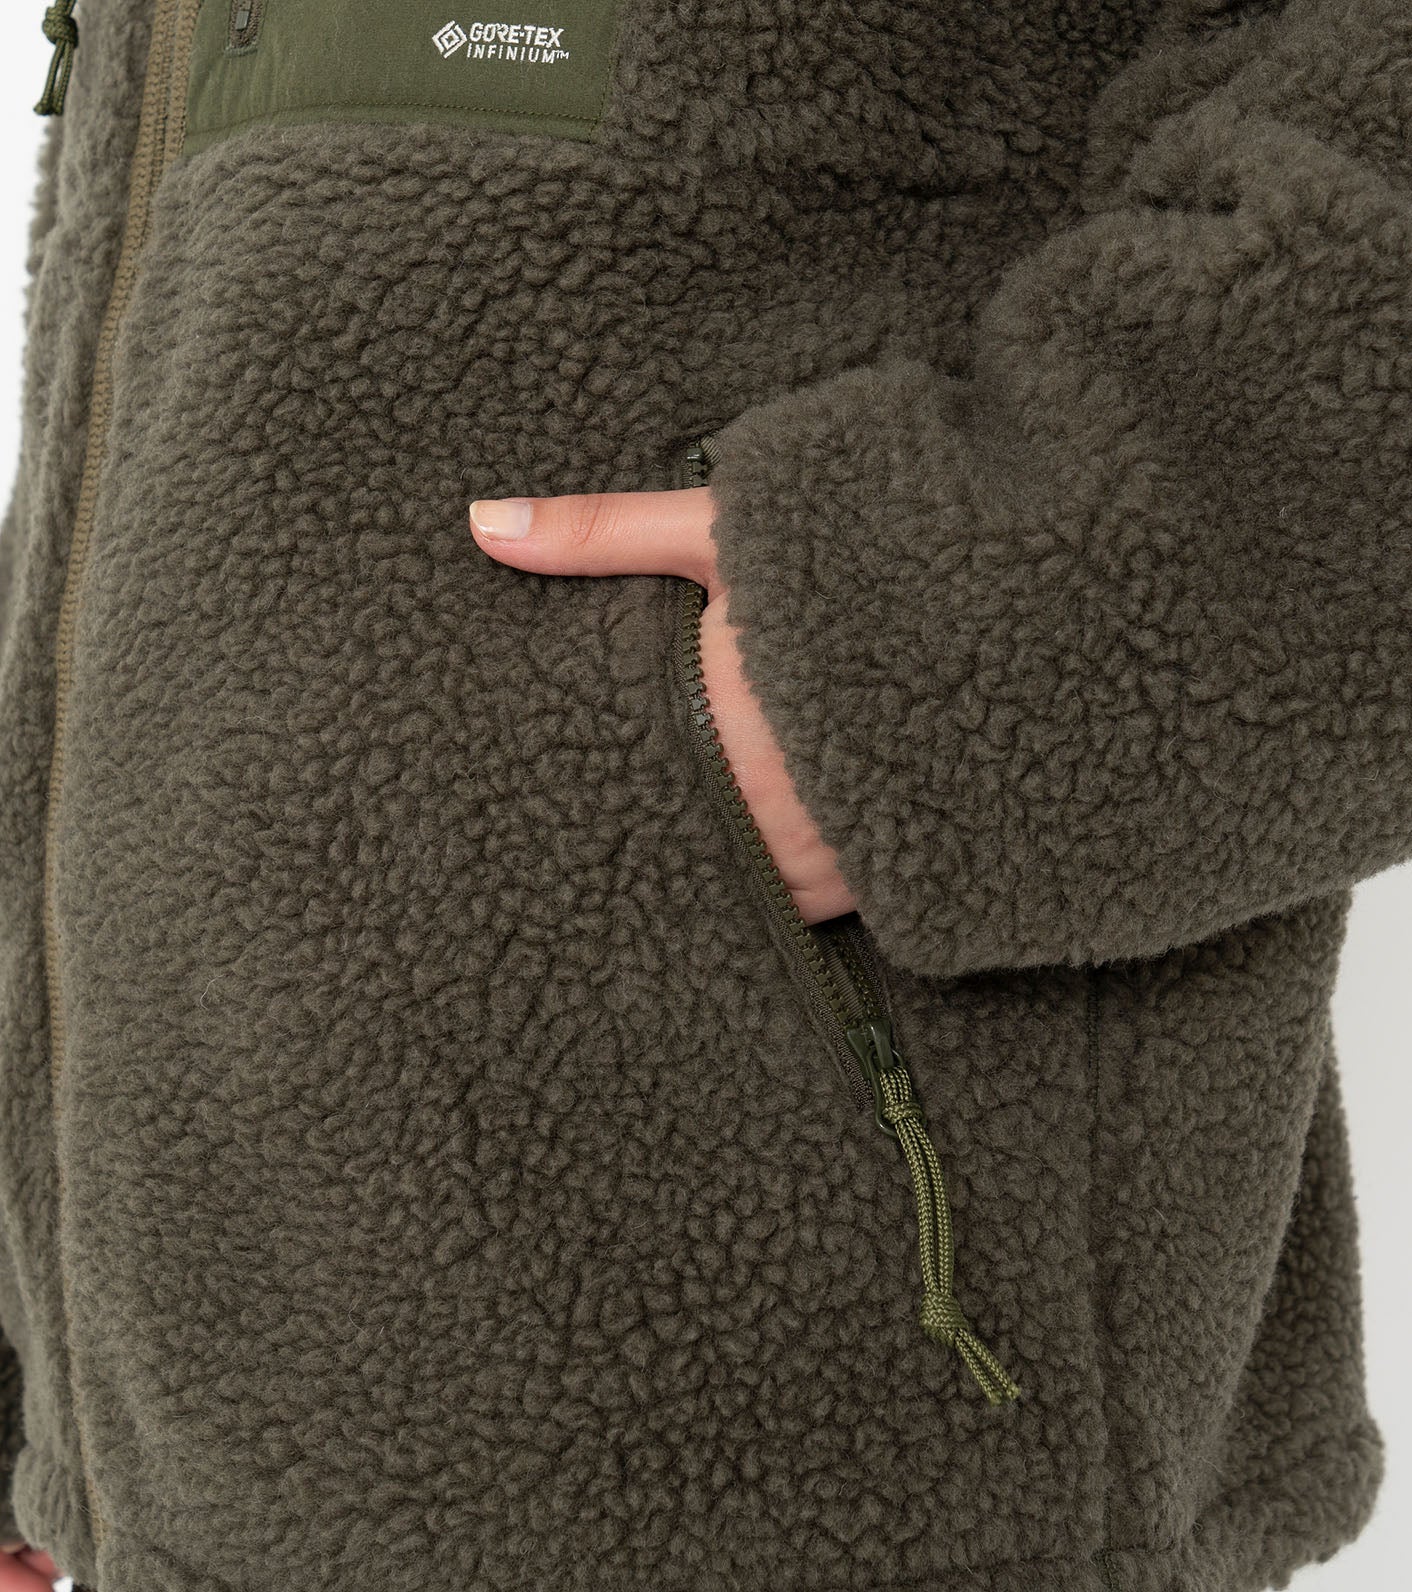 THE NORTH FACE PURPLE LABEL Wool Boa Fleece Field Jacket